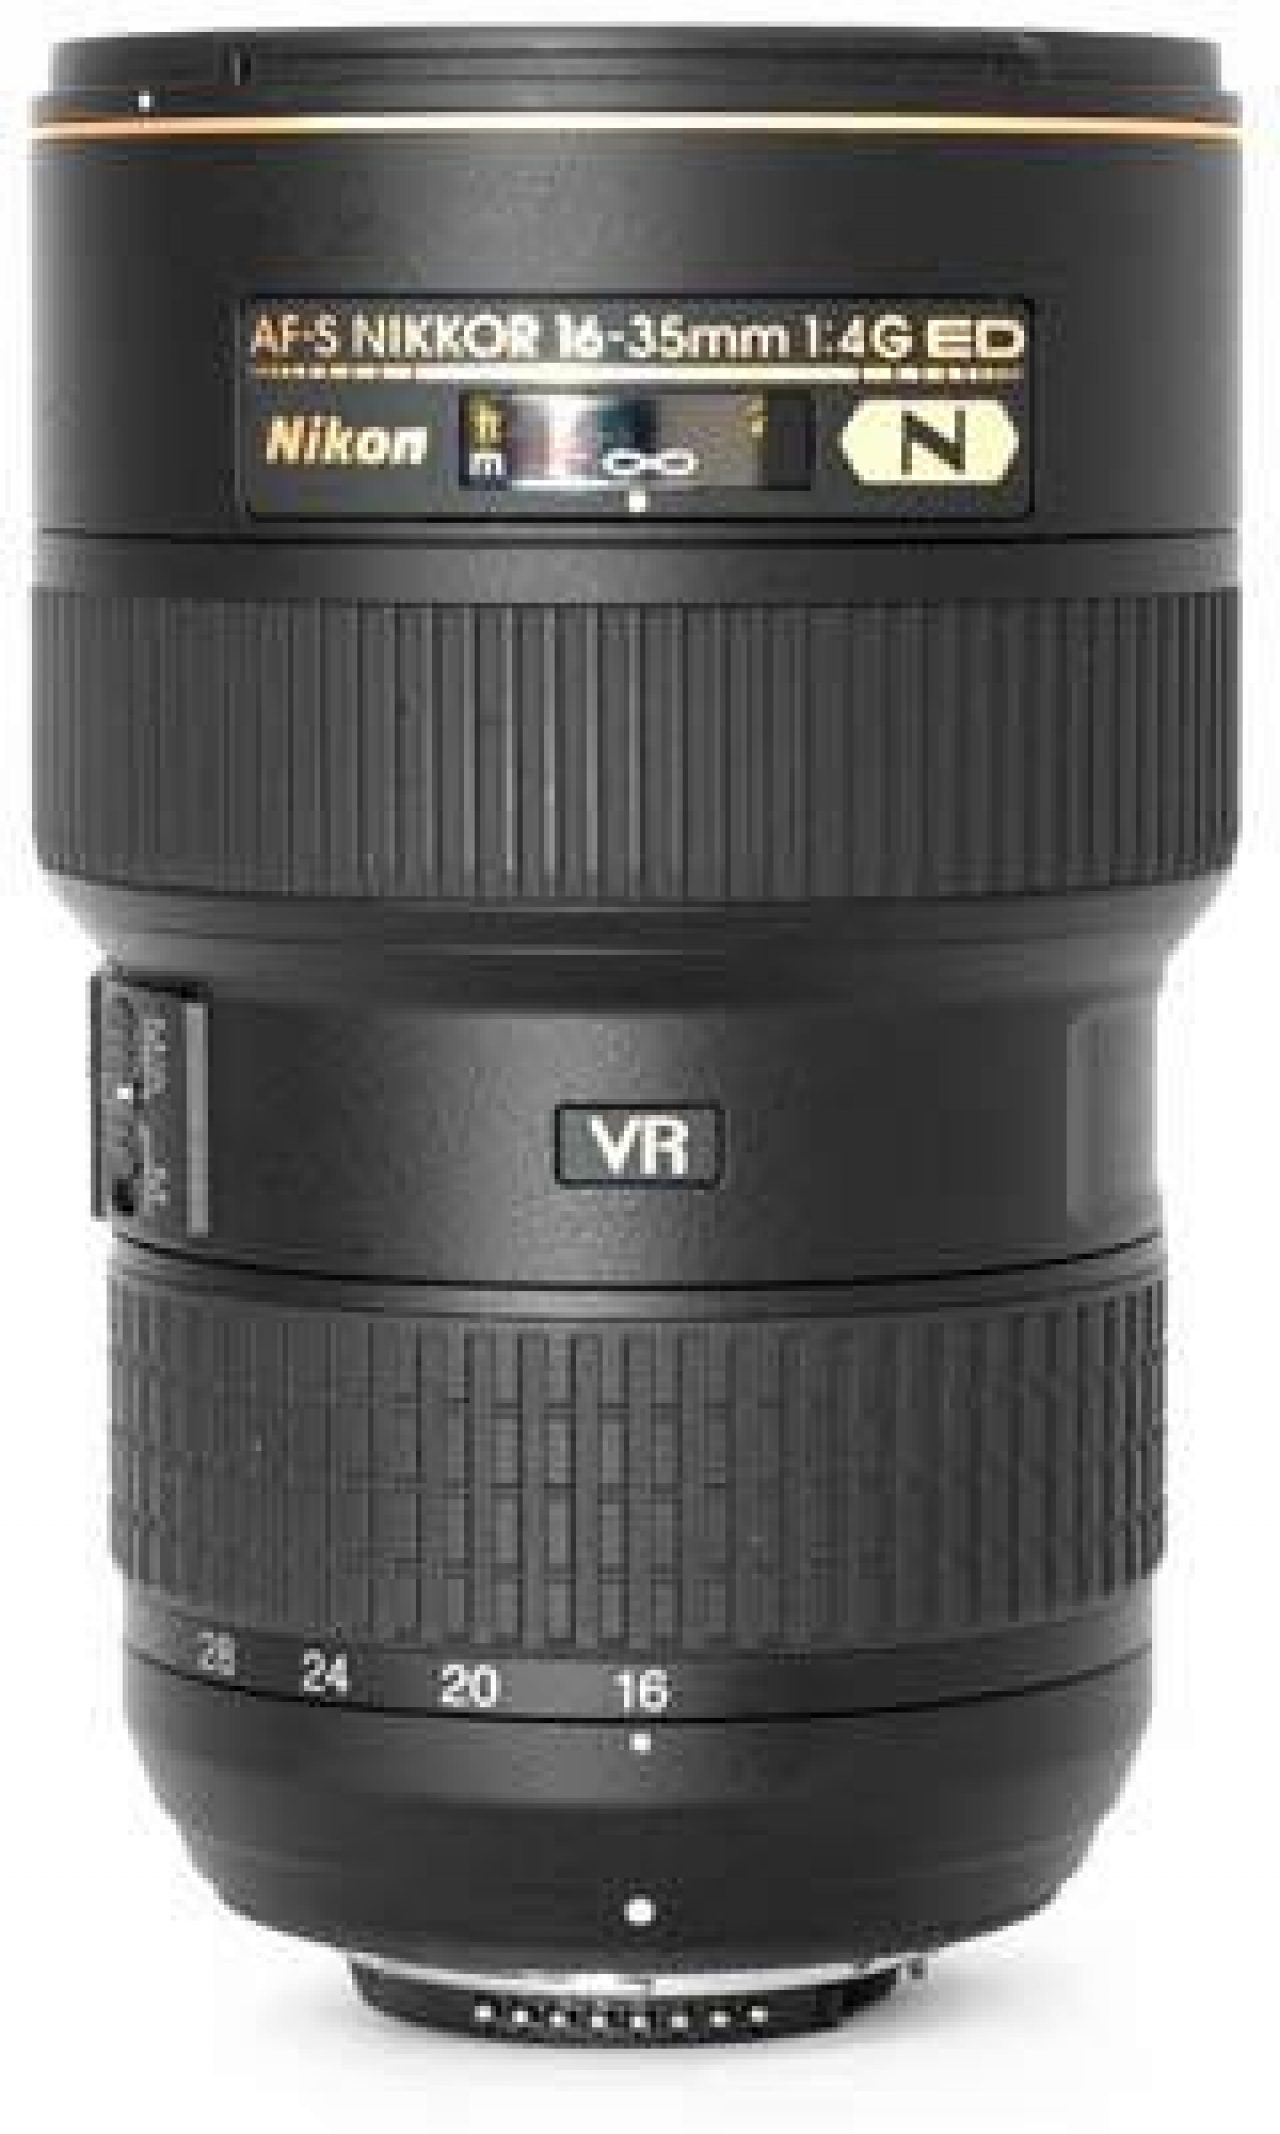 Nikon AF-S Nikkor 16-35mm f/4G ED VR Review - Sharpness 1 